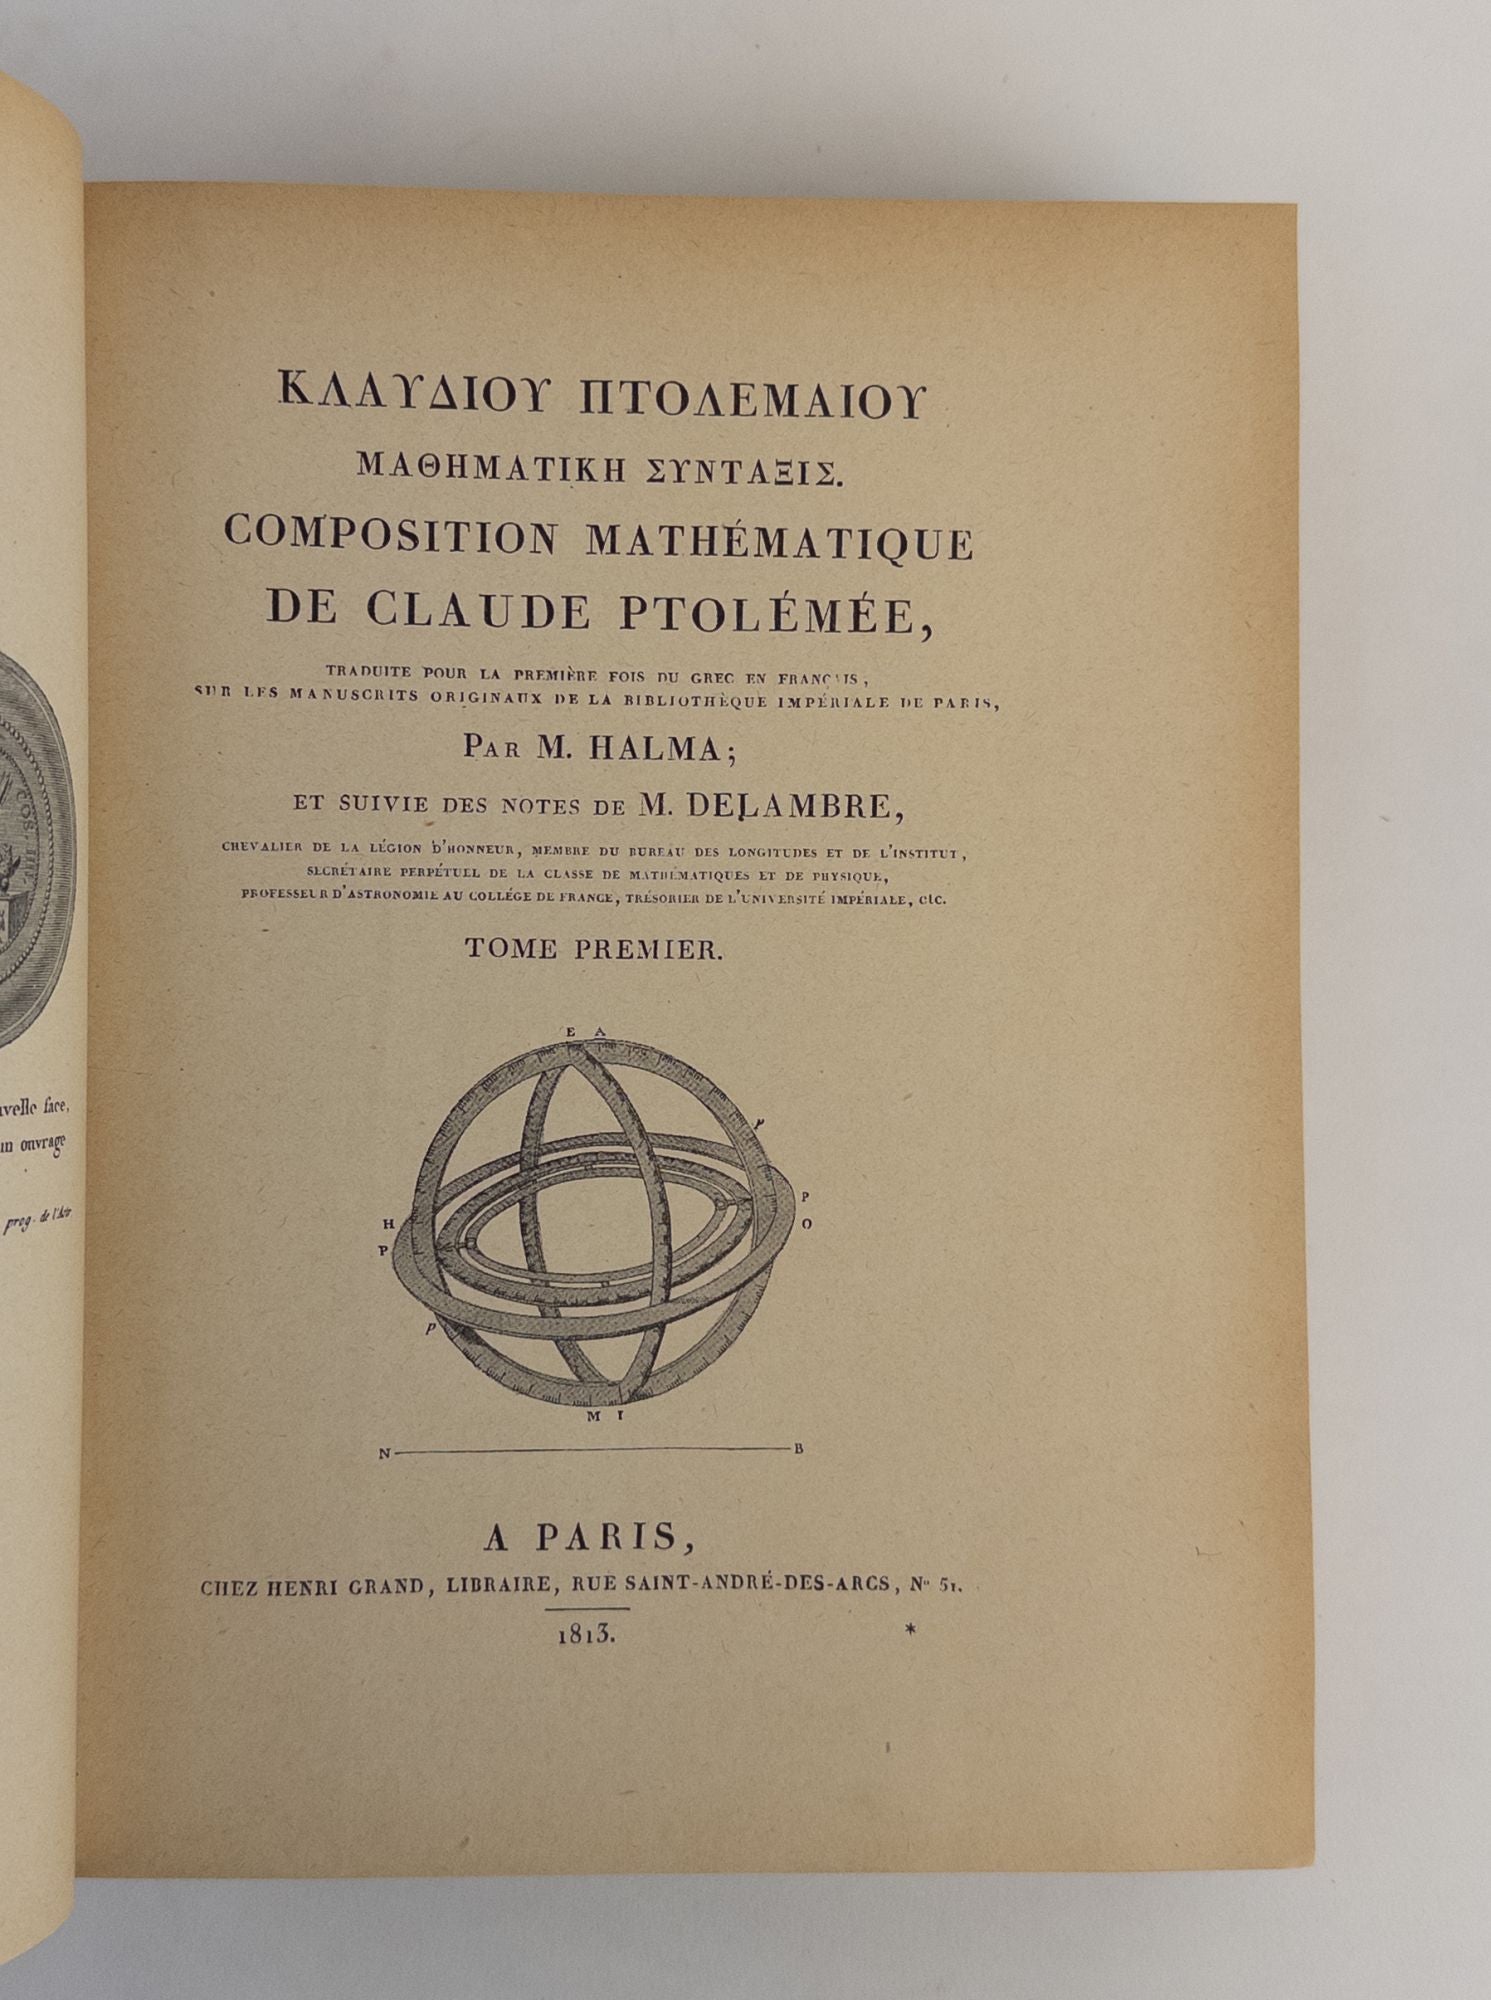 Product Image for COMPOSITION MATHÉMATIQUE DE CLAUDE PTOLÉMÉE [Two Volumes]